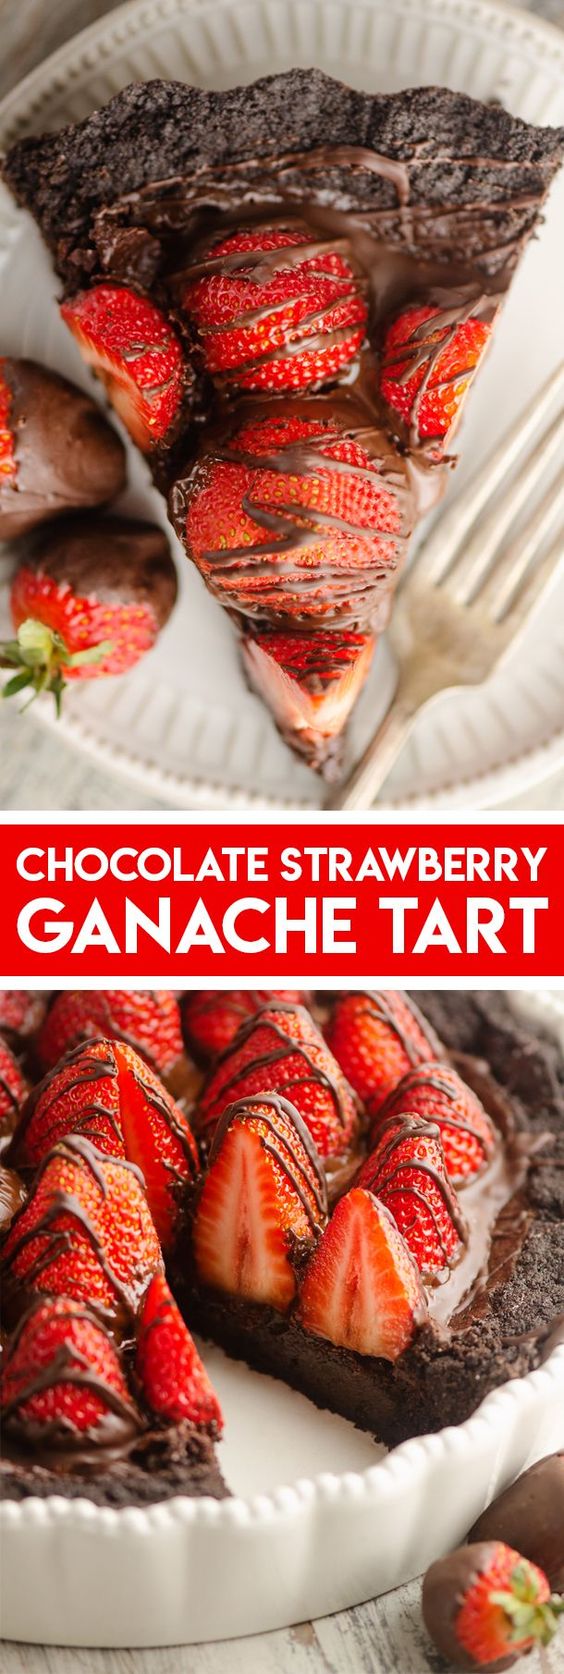 Chocolate-Covered-Strawberry-Ganache-Tart